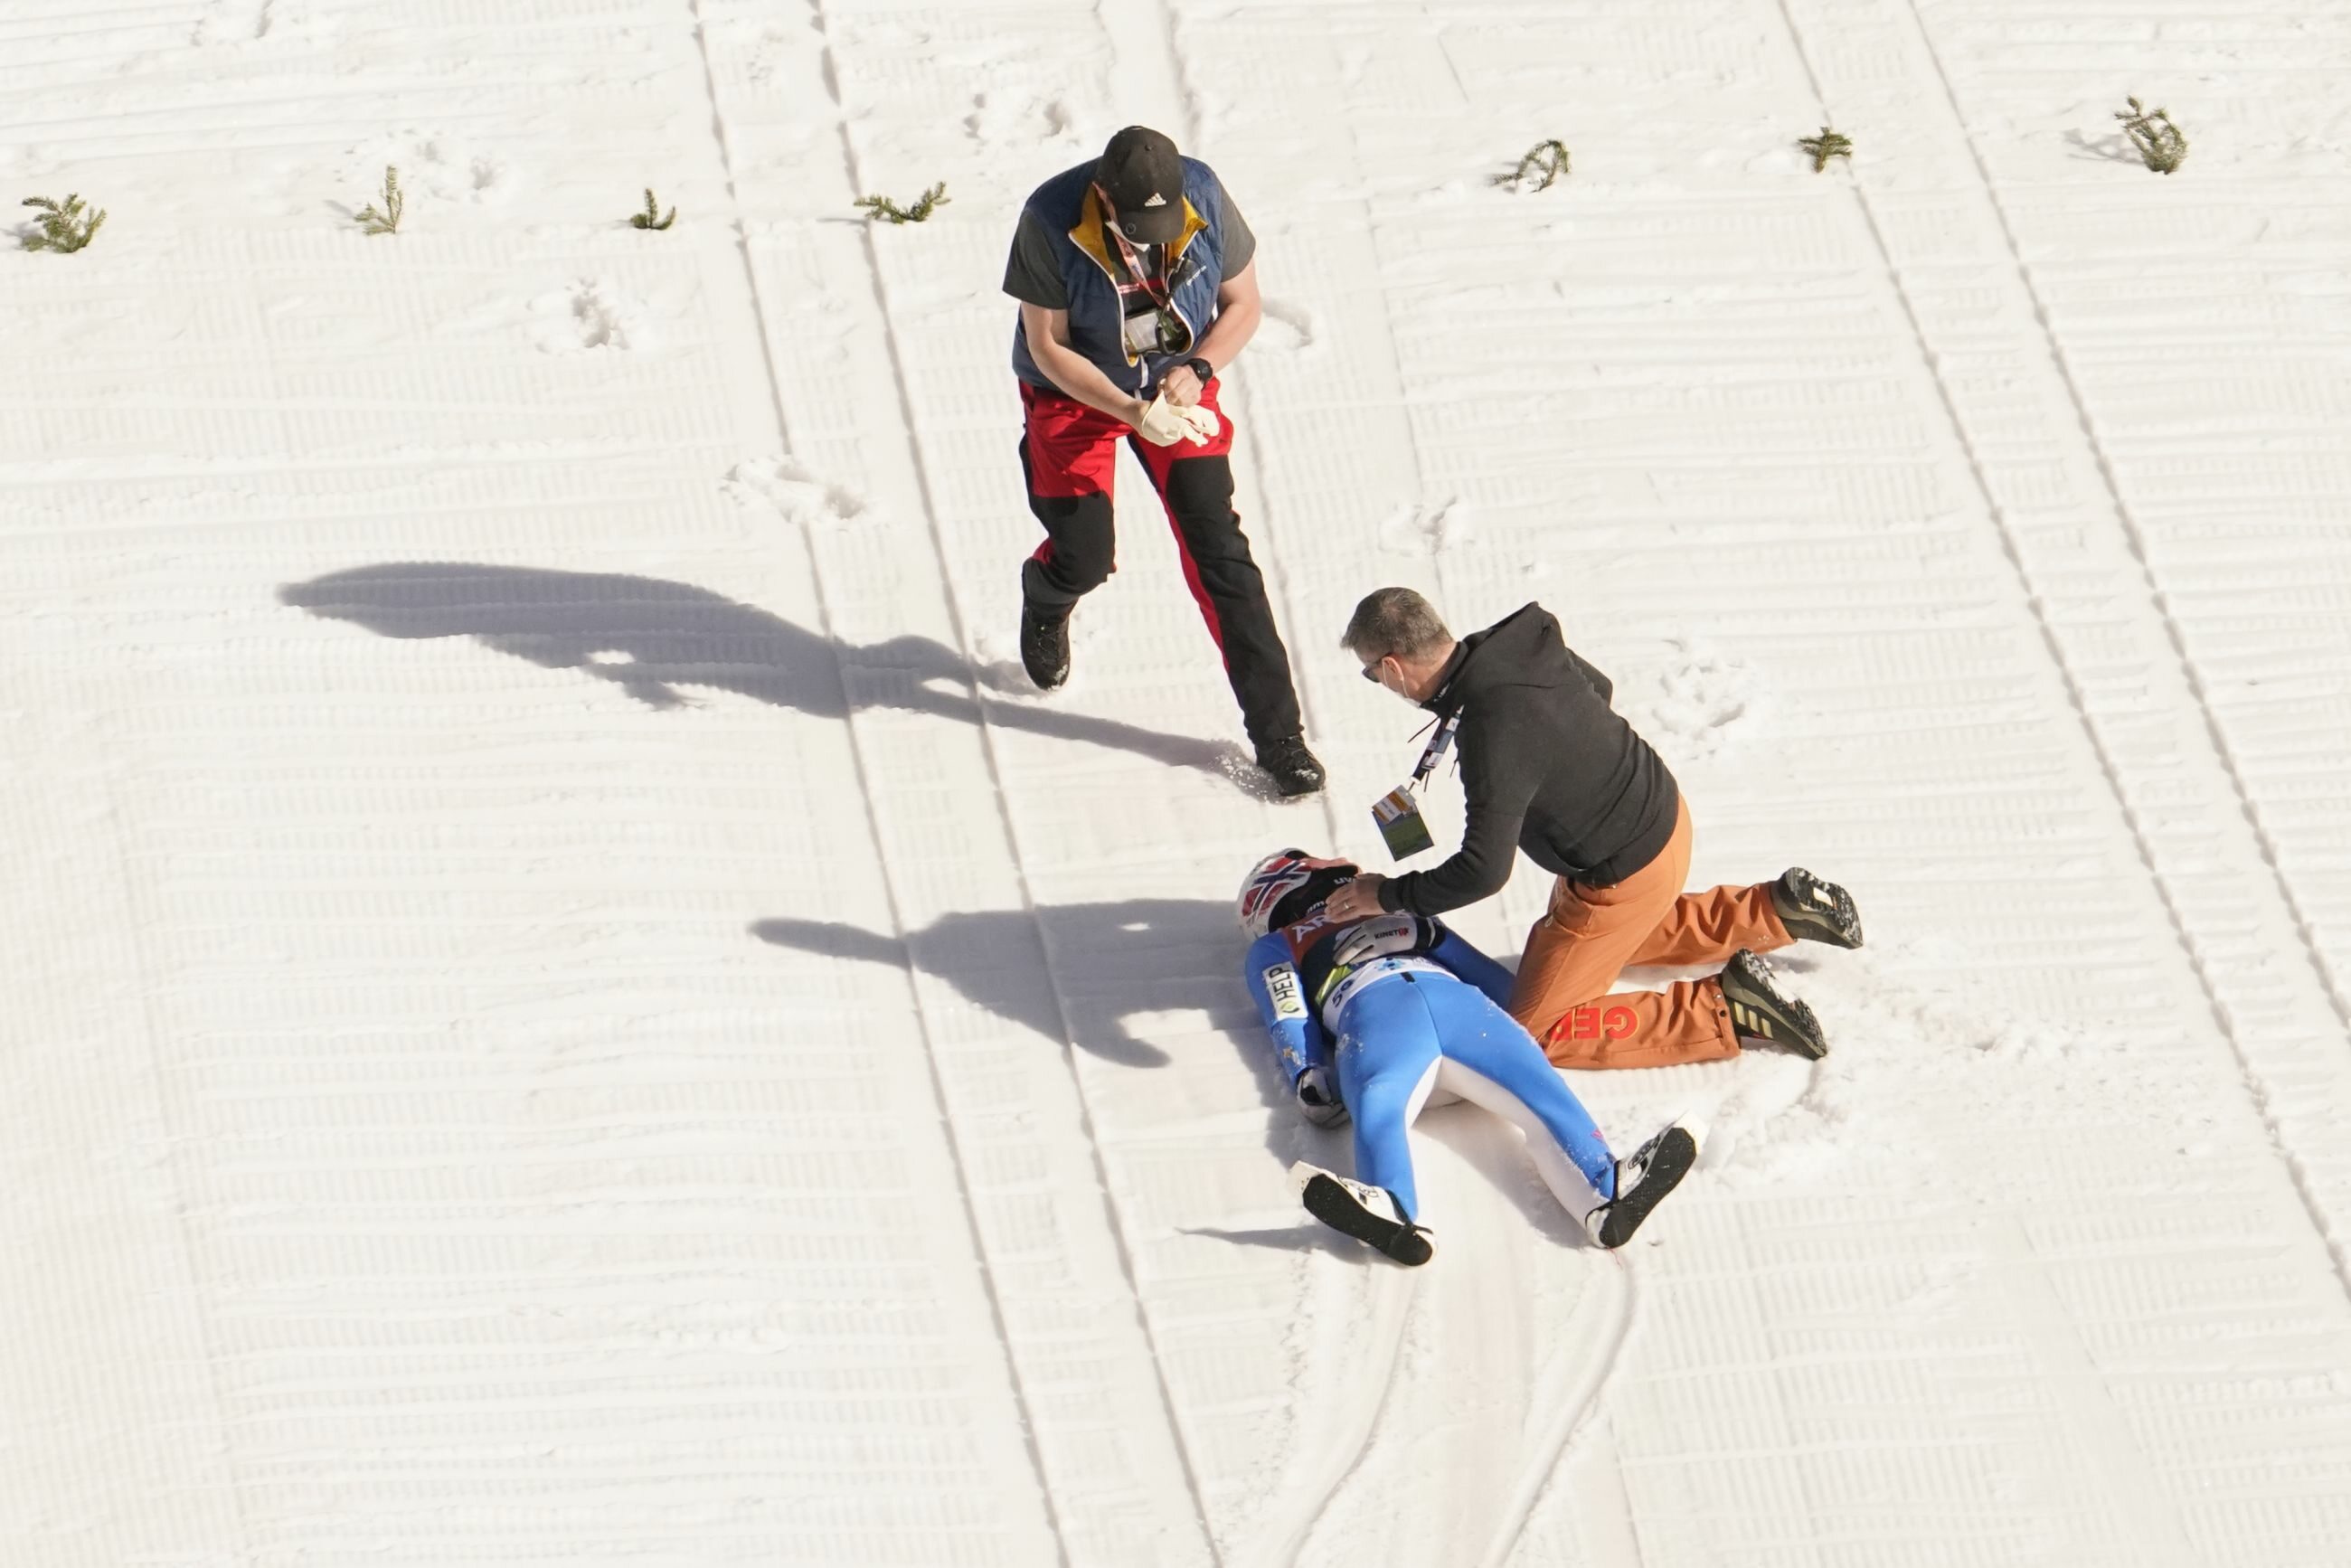 На этом снегу потерять лыжу значило тоже. Даниэль Андре Танде падение. Даниэль-Андре Танде неудачно приземлился. Прыжки с трамплина падения. Падение горнолыжника.